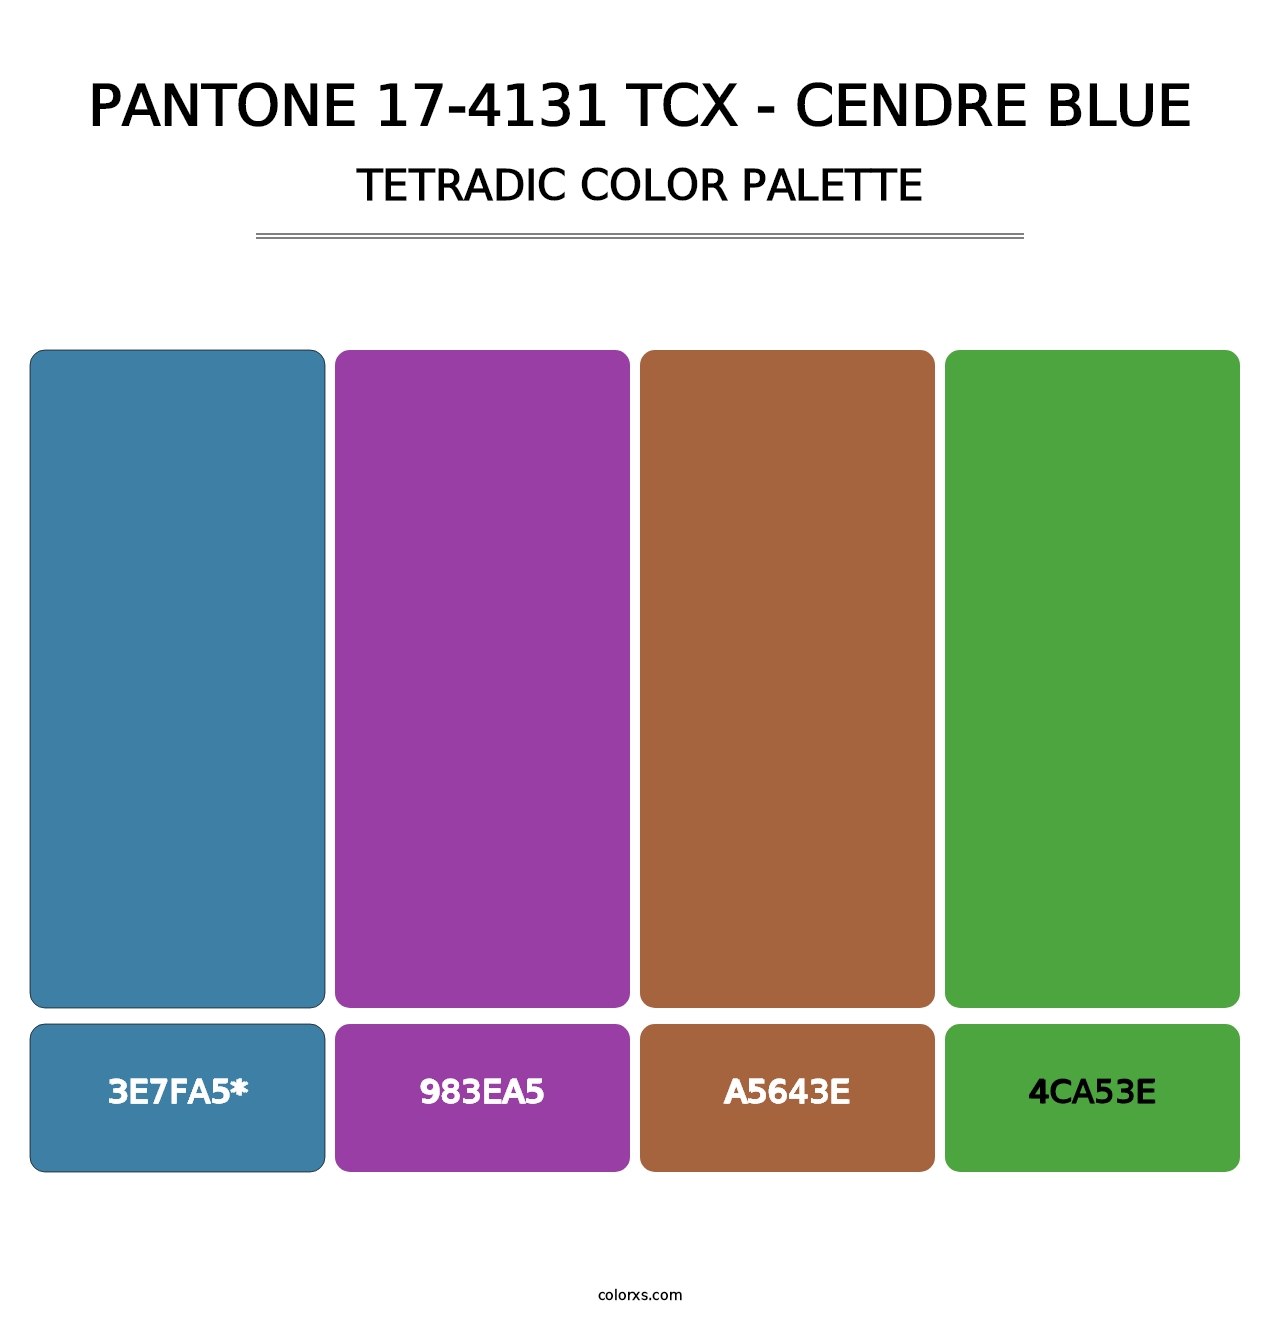 PANTONE 17-4131 TCX - Cendre Blue - Tetradic Color Palette